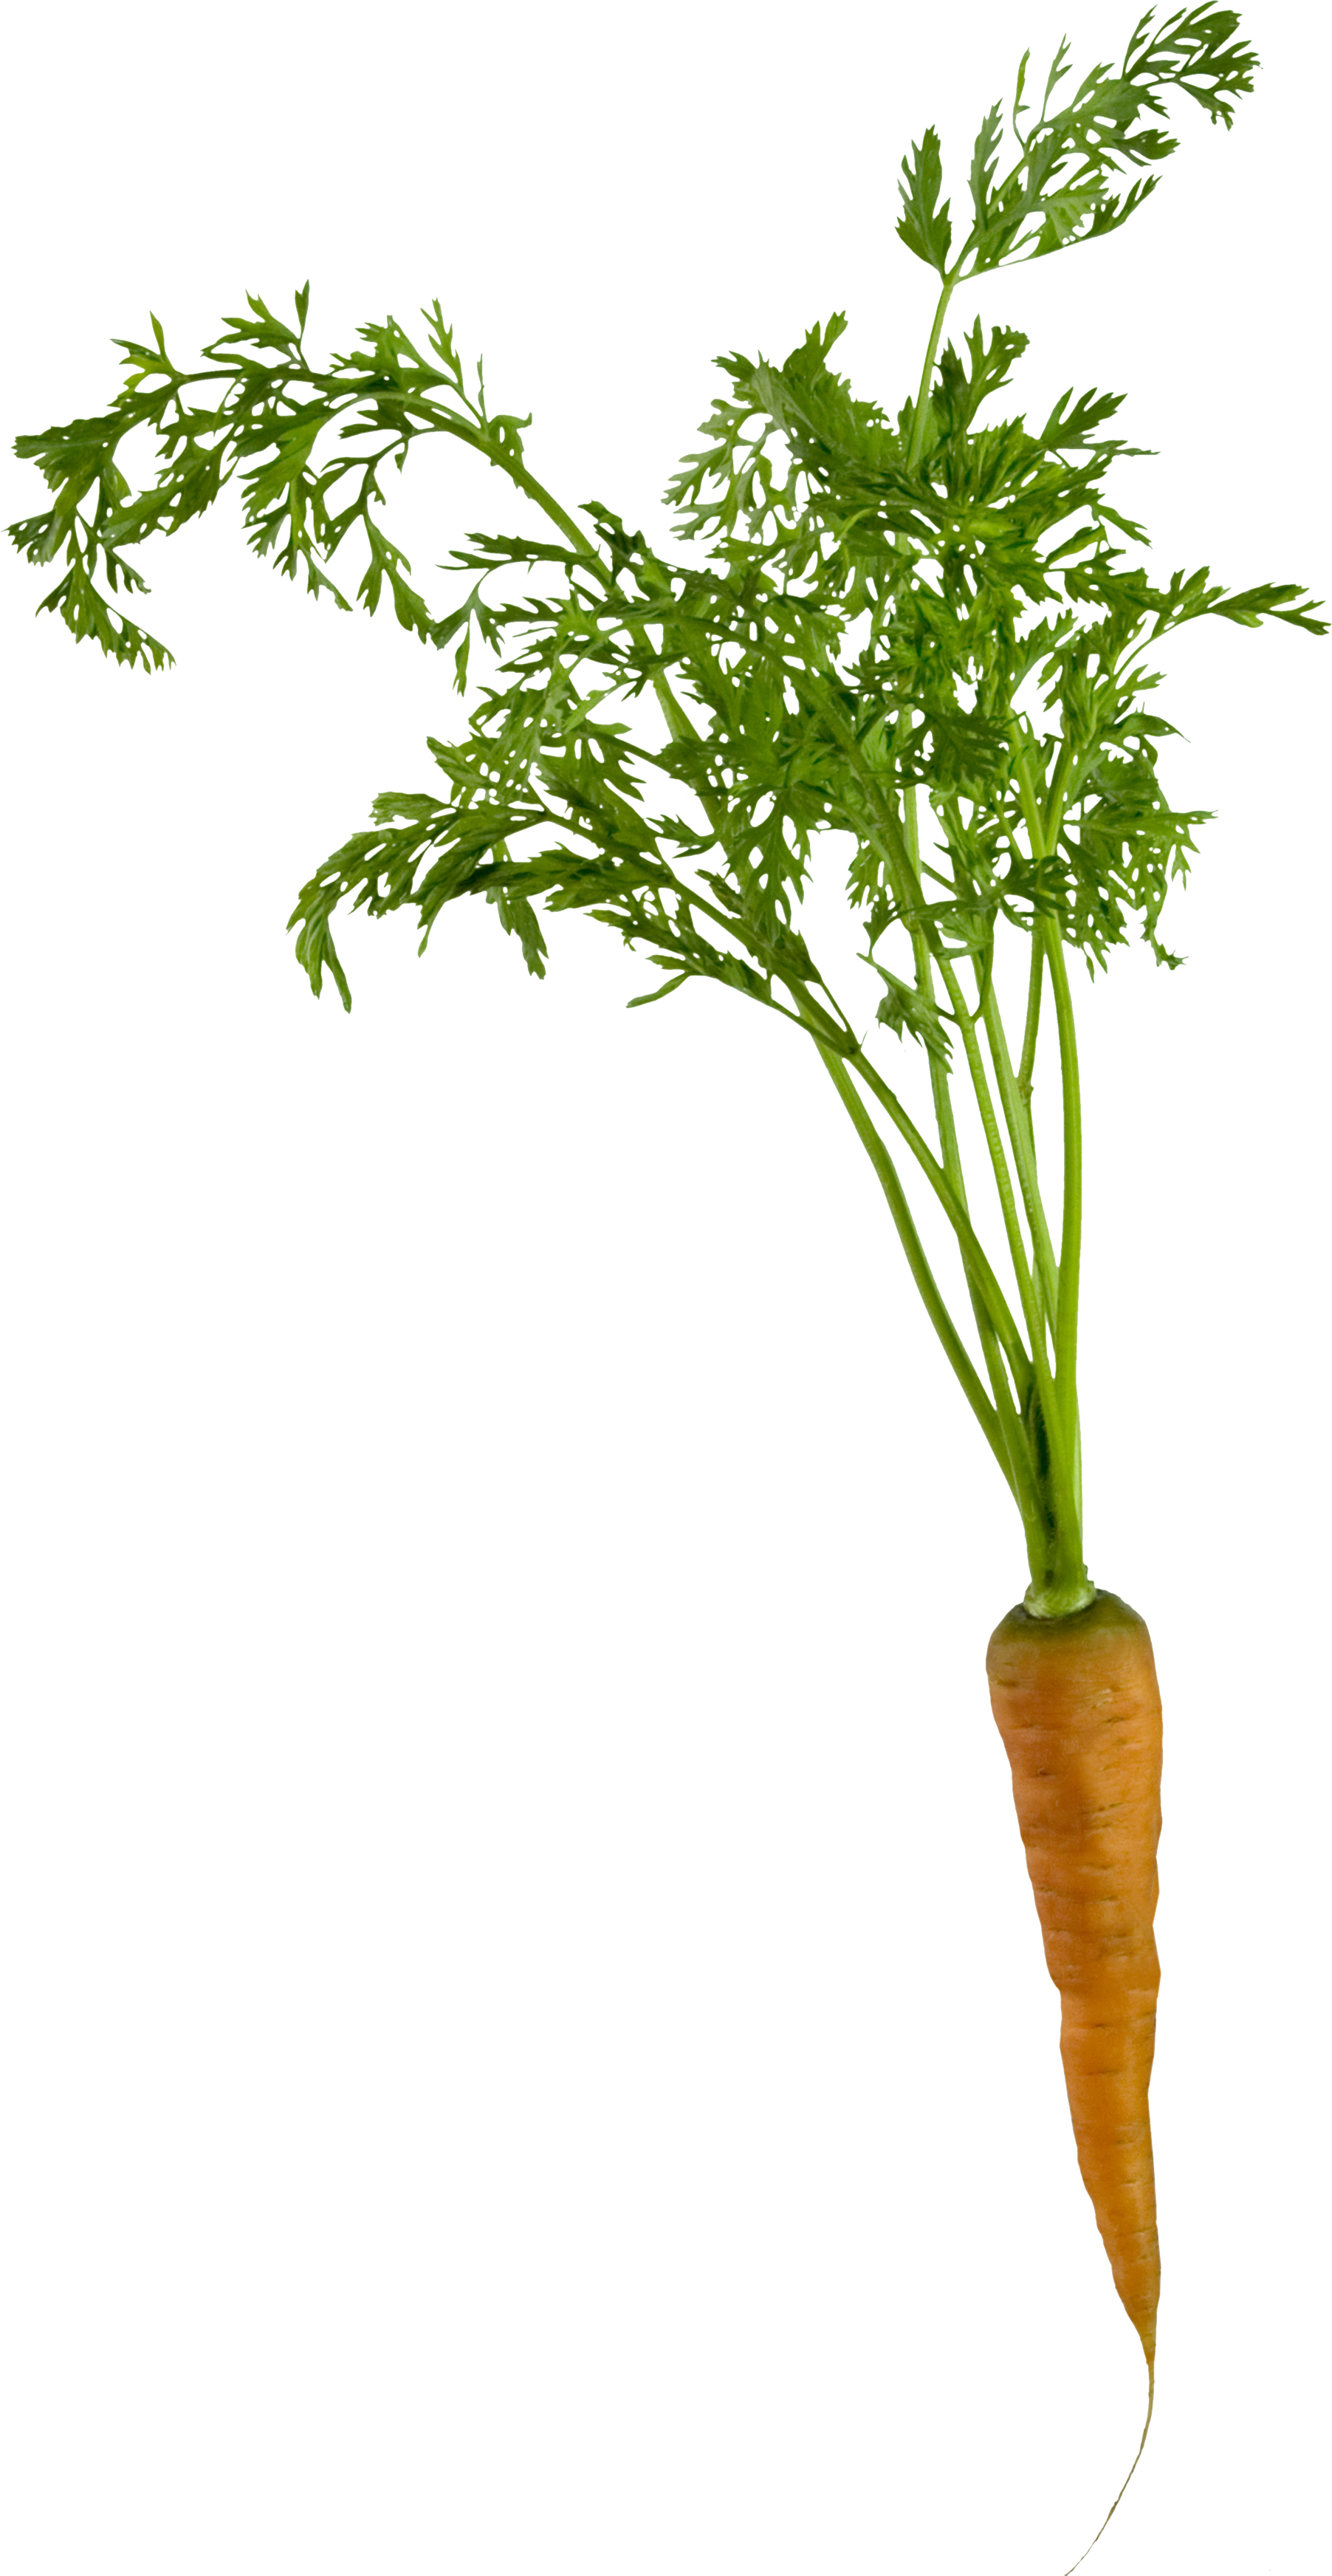 Top View Carrot Transparent Image